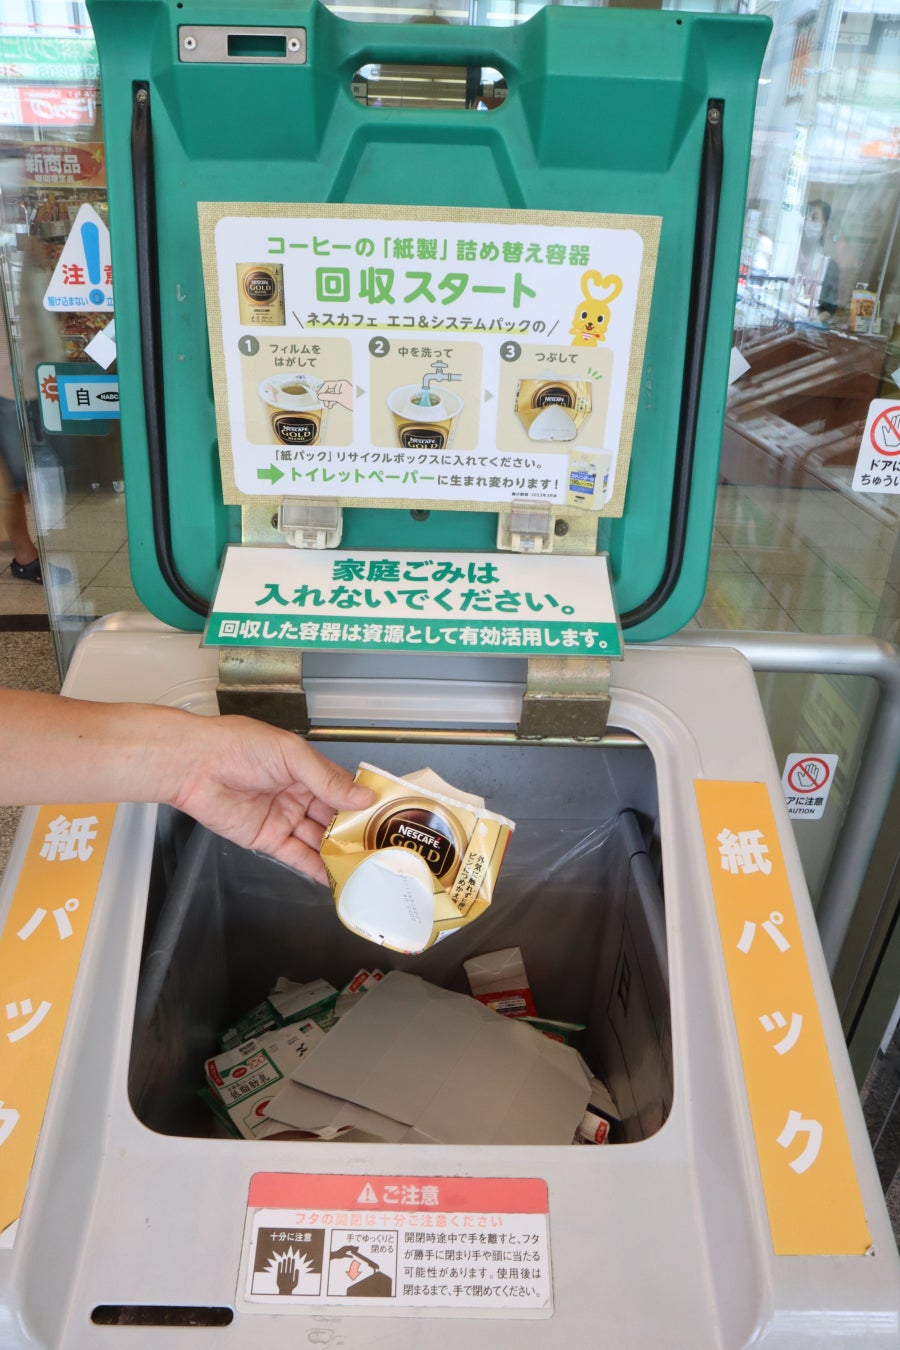 全国初、「ネスカフェ」の紙製パッケージをトイレットペーパーにリサイクル！牛乳パック等の紙パックと一緒に空きパッケージを回収する取り組みを兵庫県・大阪府内のコープこうべ全店で開始のサブ画像1_店頭での回収の様子